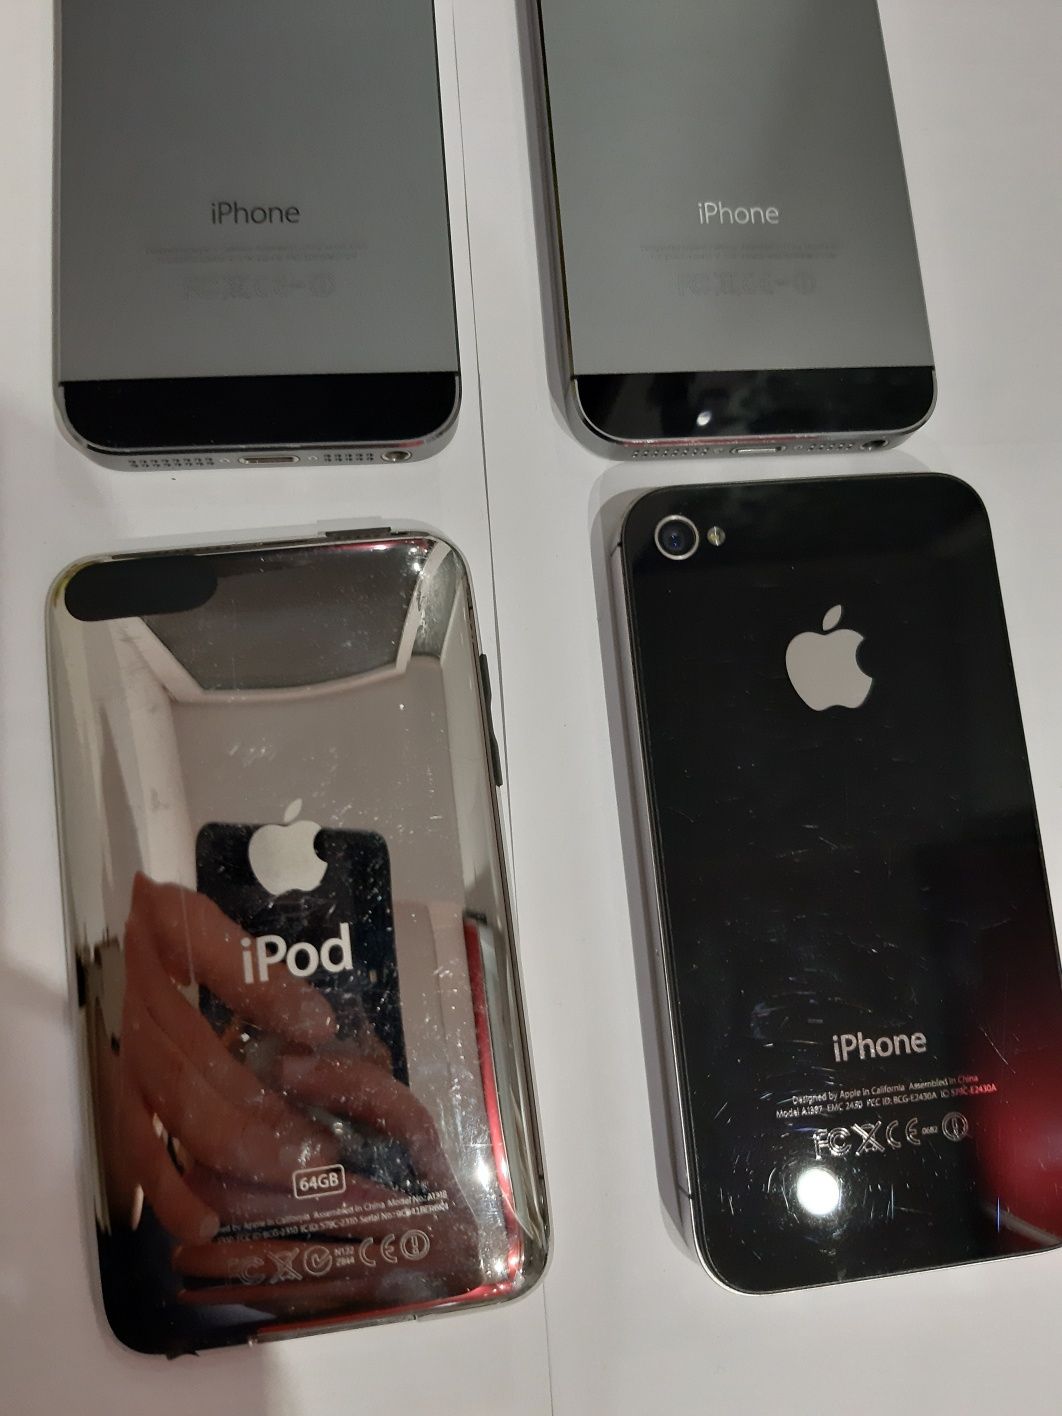 iPhone a1387, a1457,  Ipod a1318 64 gb